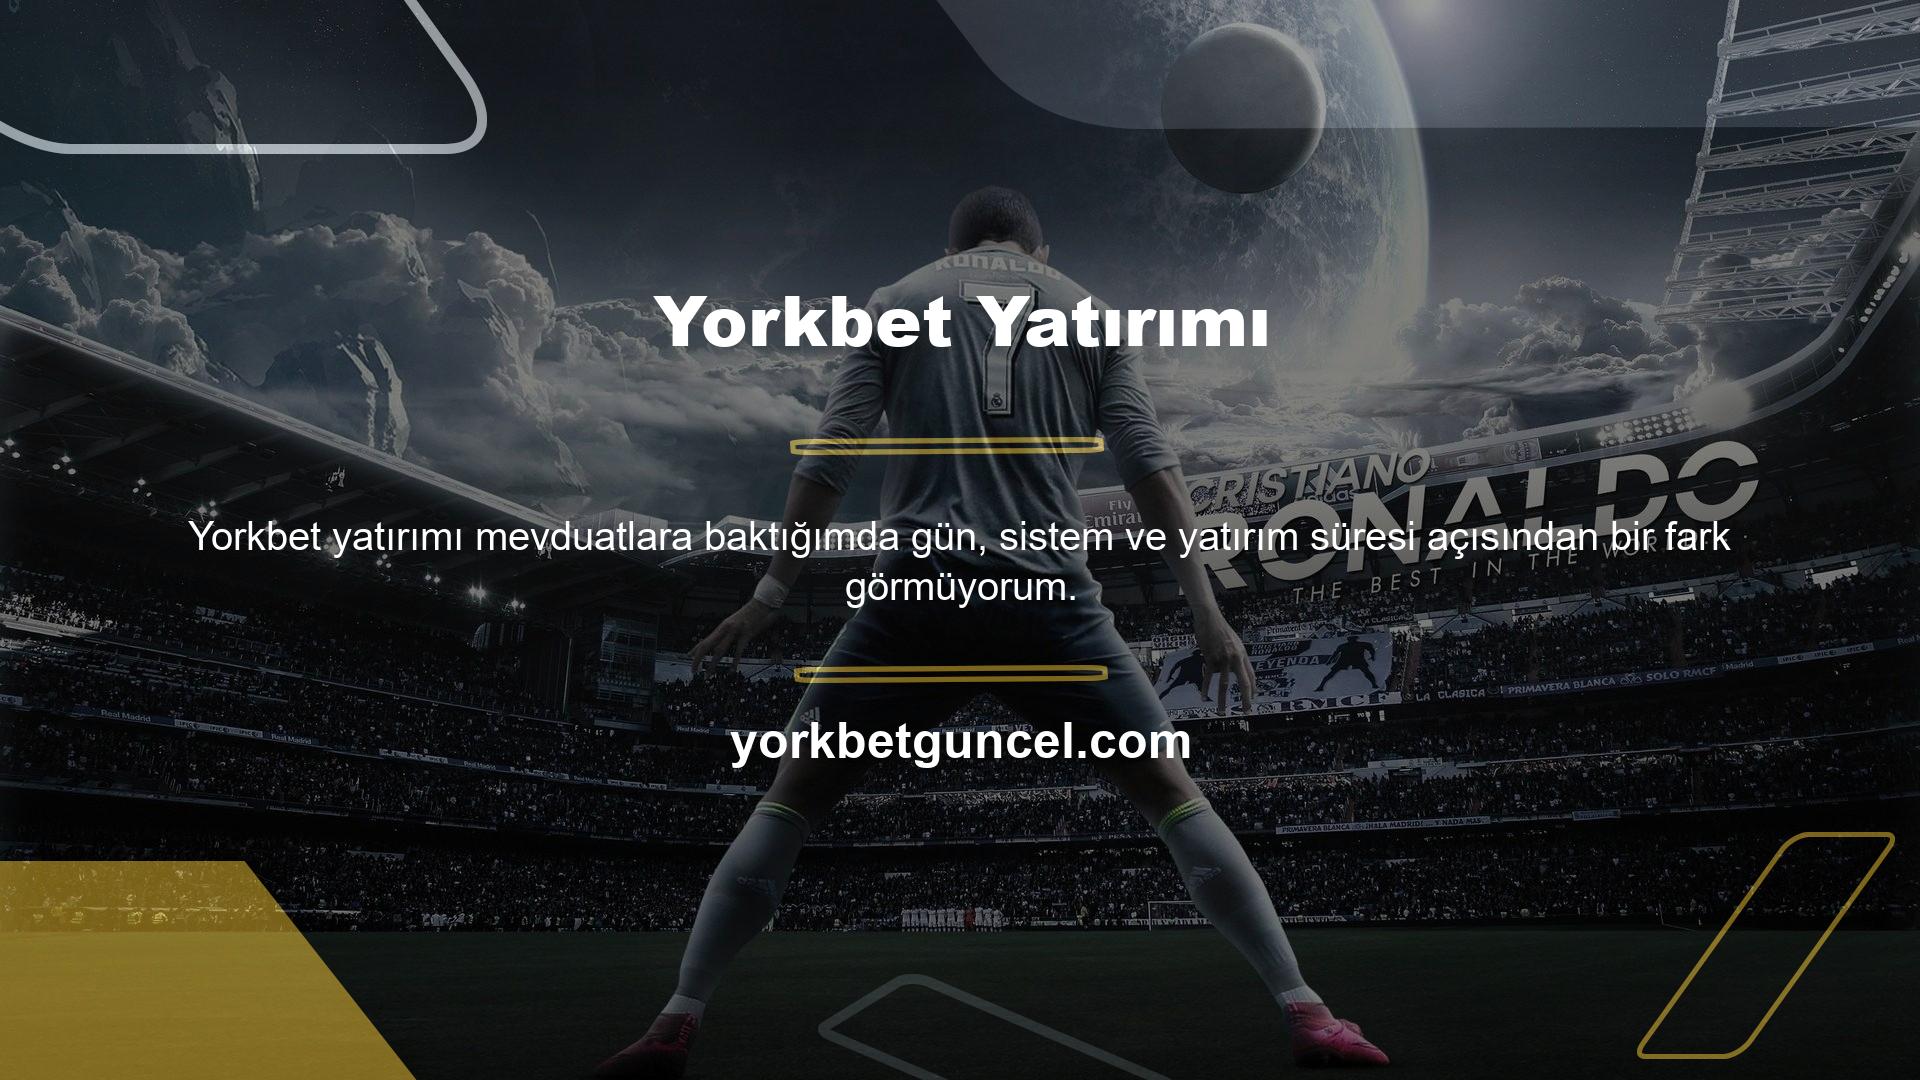 Modifikasyon ile Yorkbet çeşitli oyun sitelerinin üyelerine büyük kolaylıklar getirmiştir